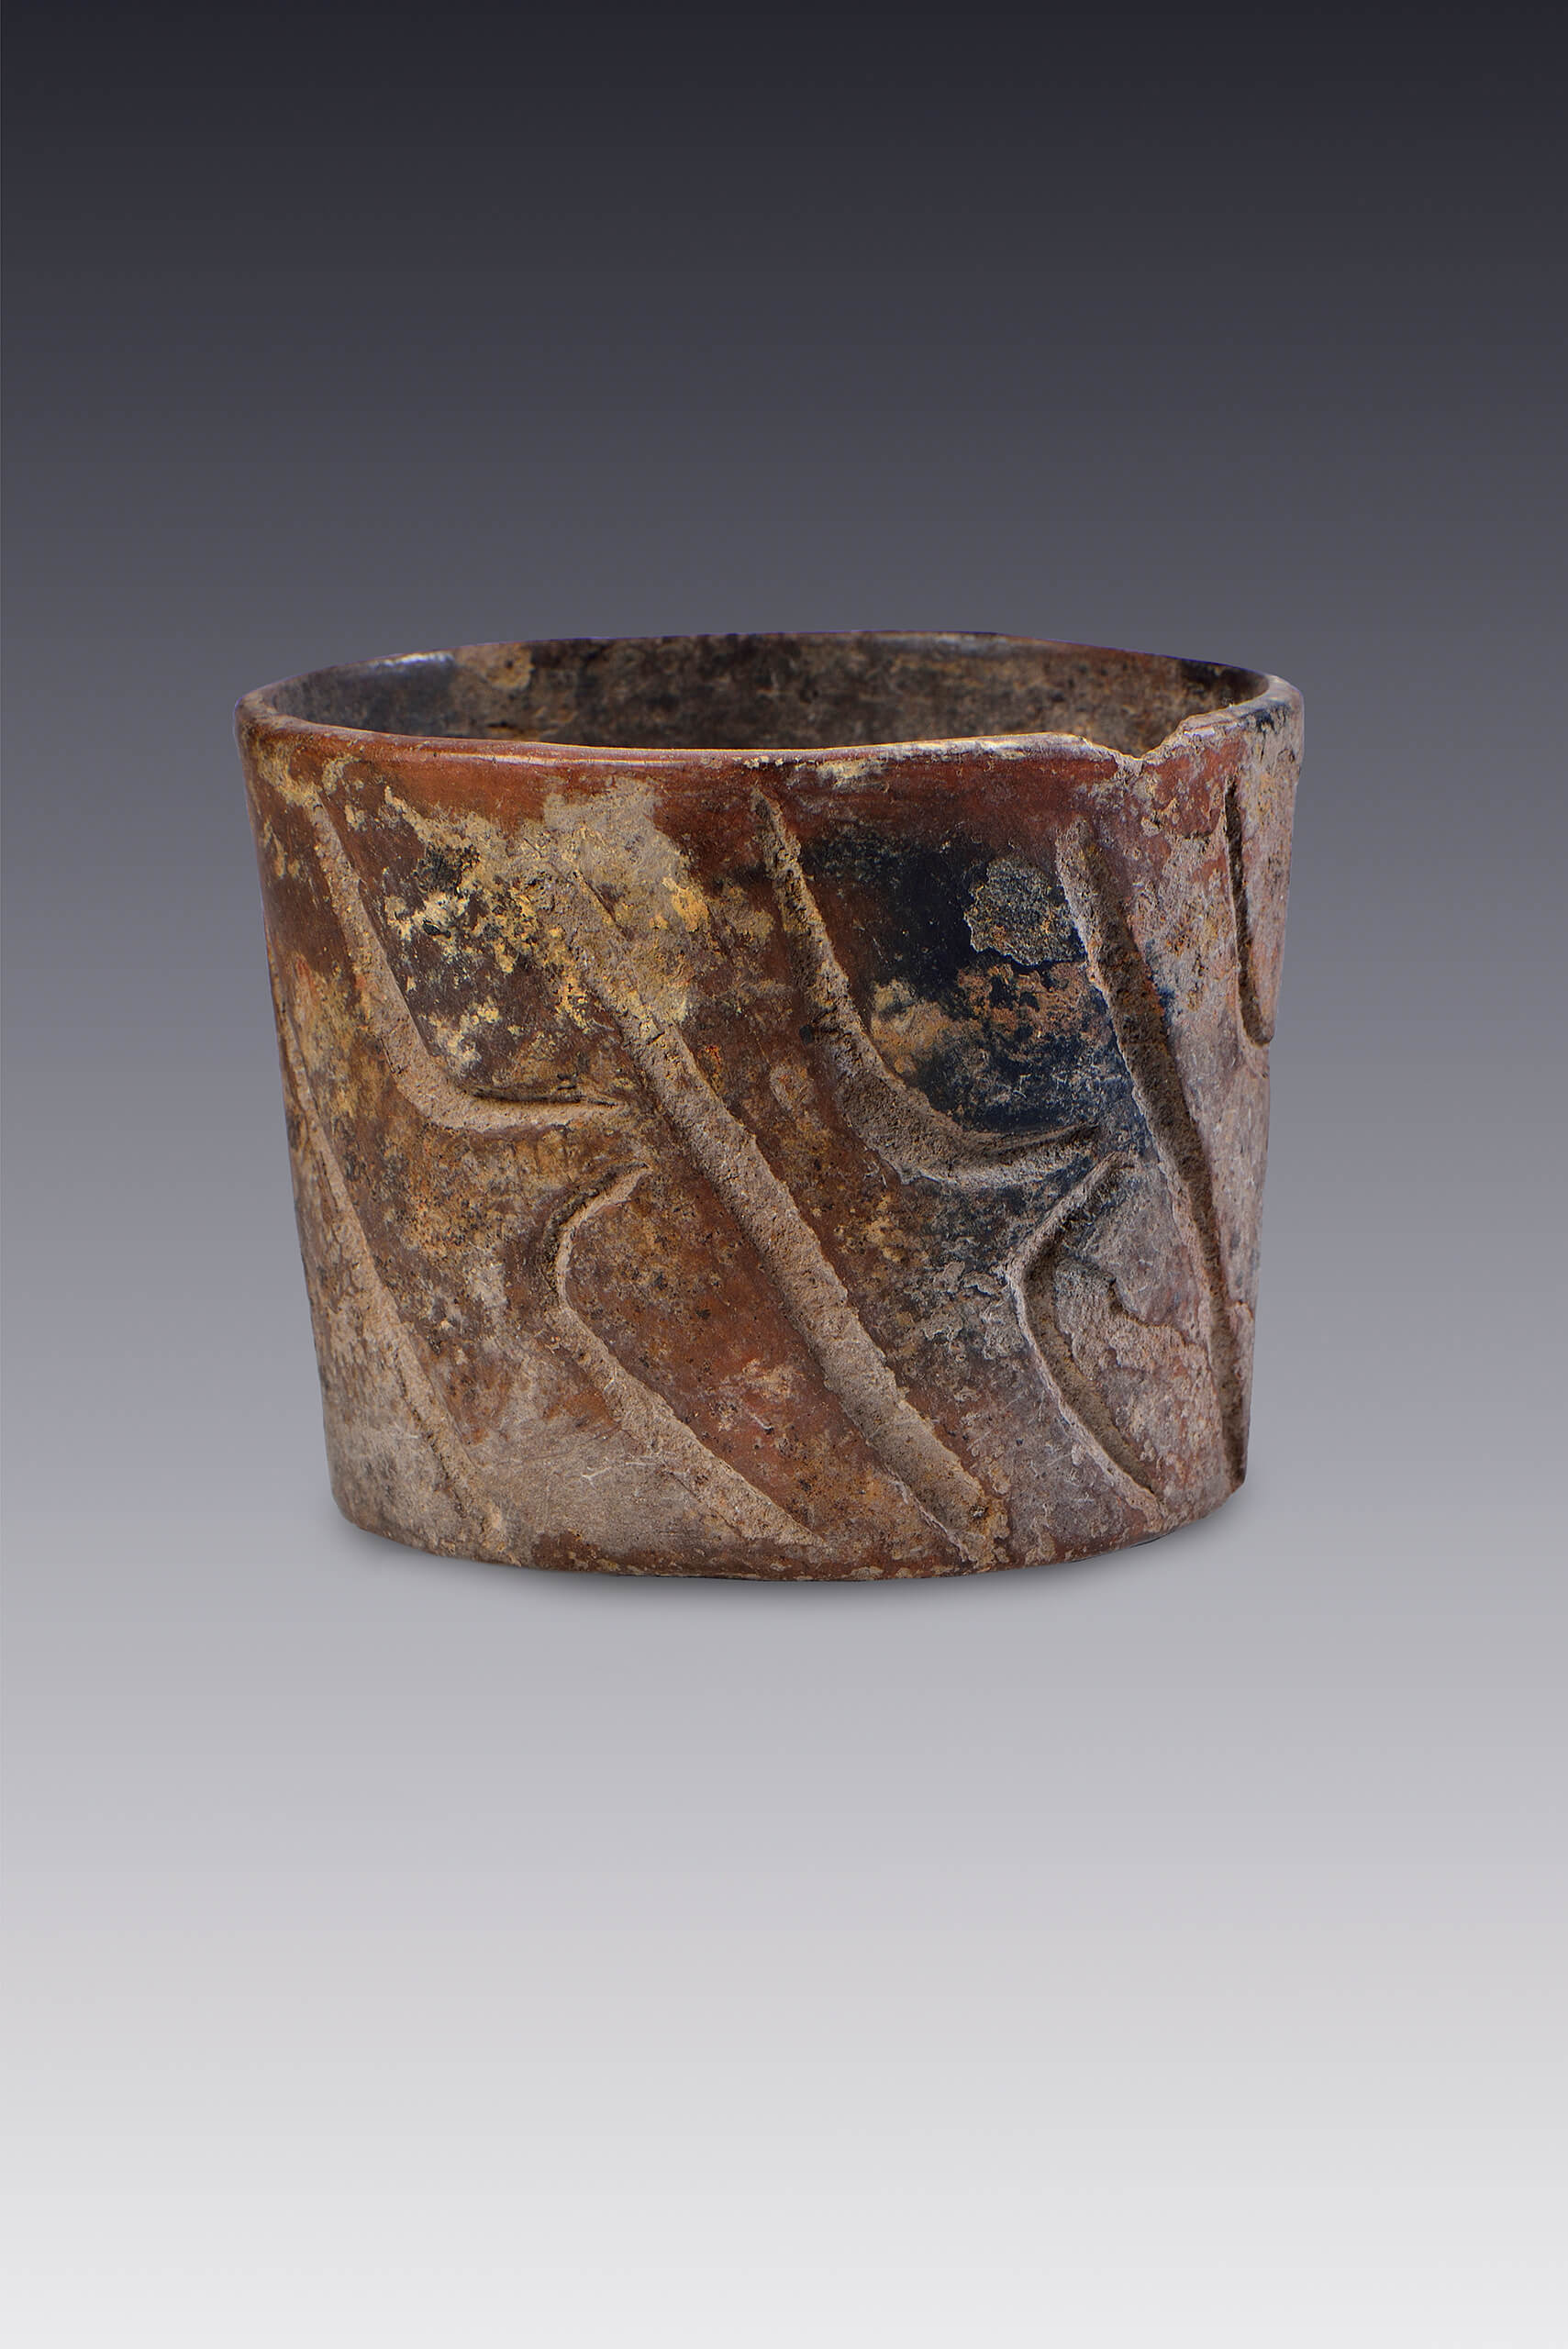 Vaso con motivos geométricos | El México antiguo. Salas de Arte Prehispánico | Museo Amparo, Puebla